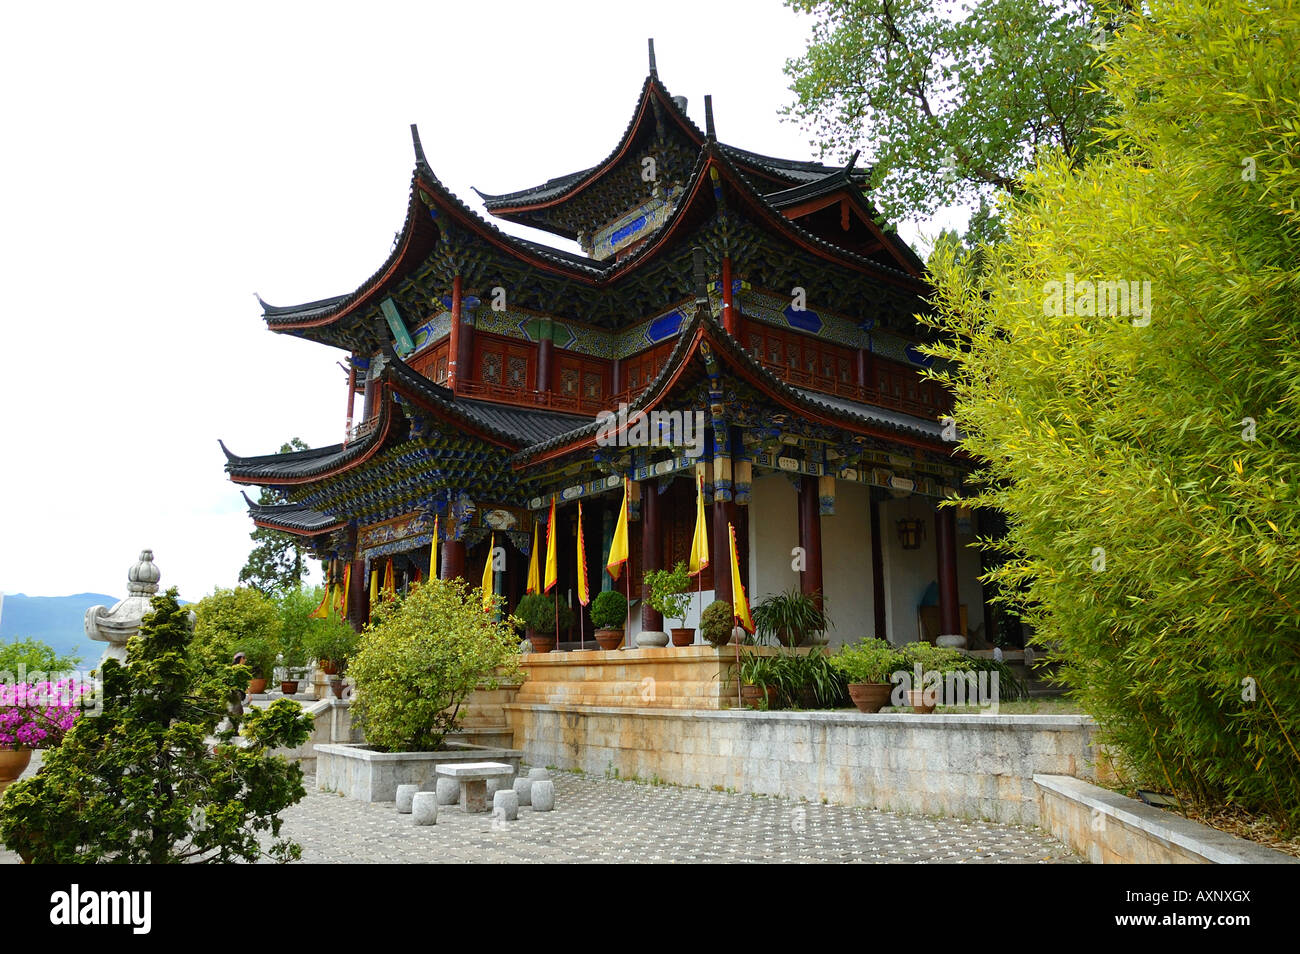 Ein Taoistischer Tempel des traditionellen Stils war der König und die königliche Familie. Lijiang, Yunnan, China. Stockfoto